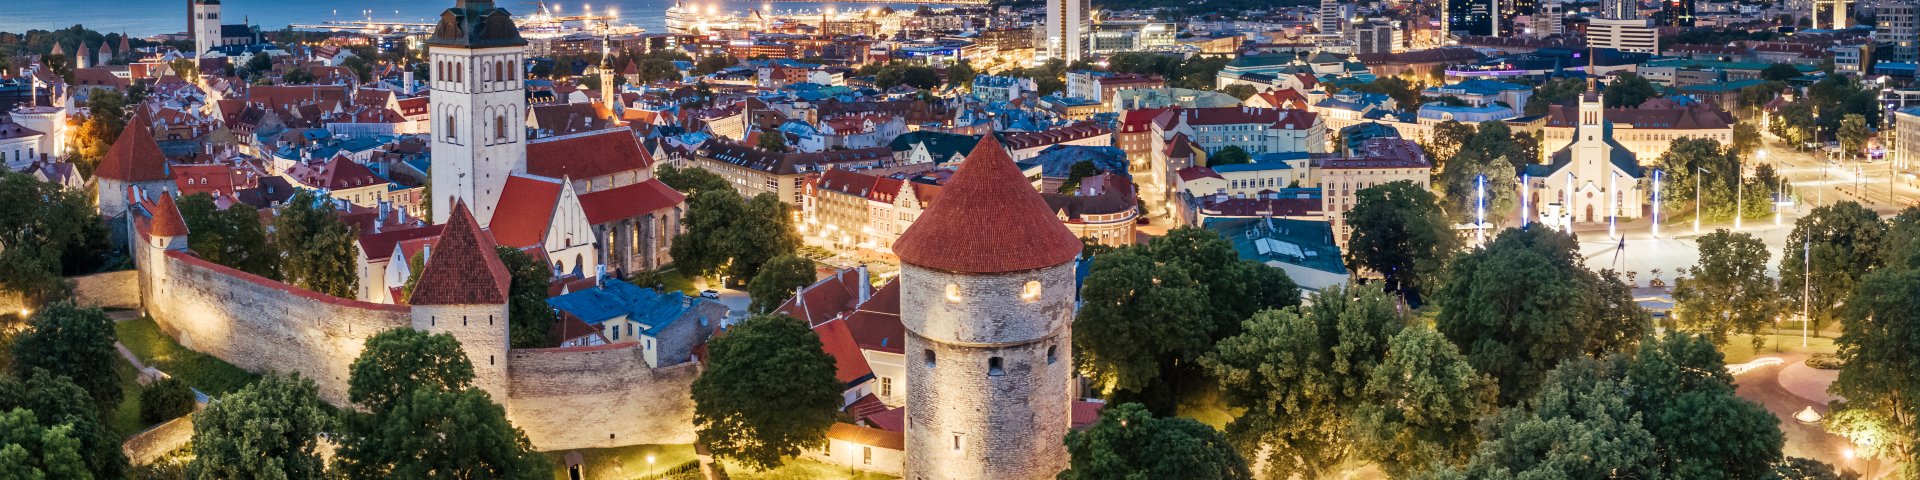 Tallinn Old Town_Kaupo Kalda